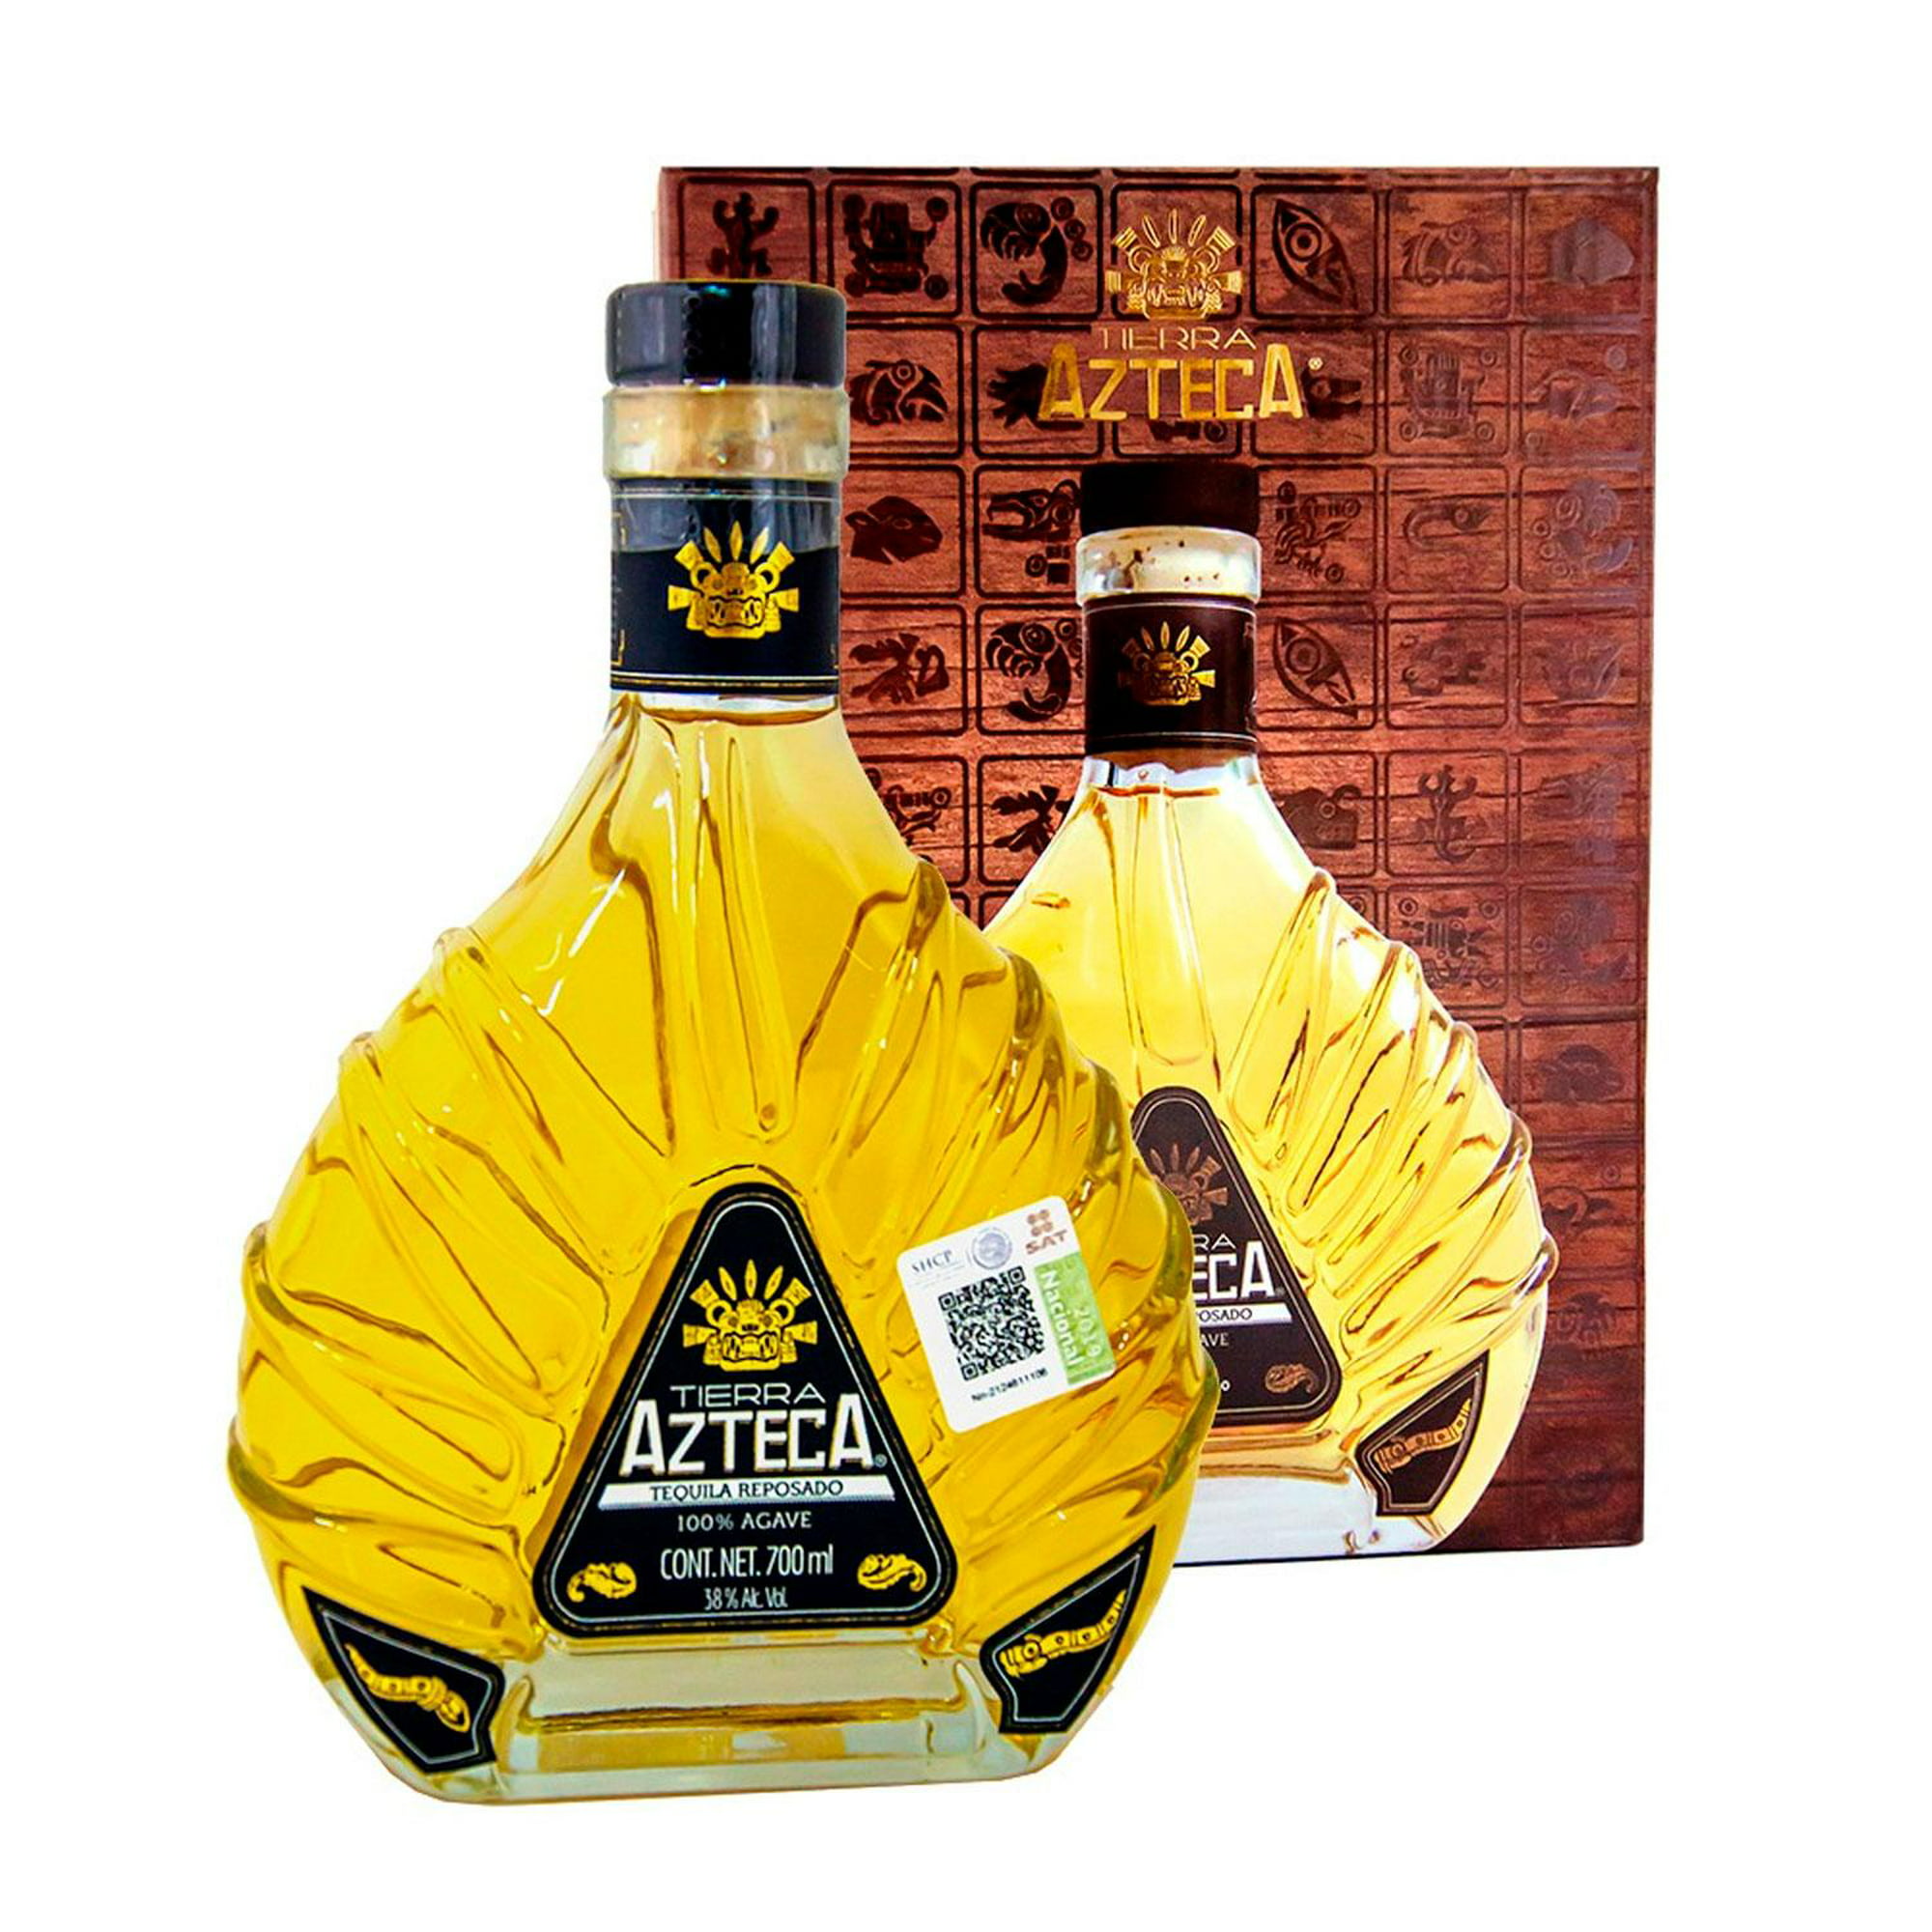 Tequila Tierra línea Azteca en Reposado ml | Reposado 700 Bodega Tierra Aurrera Azteca